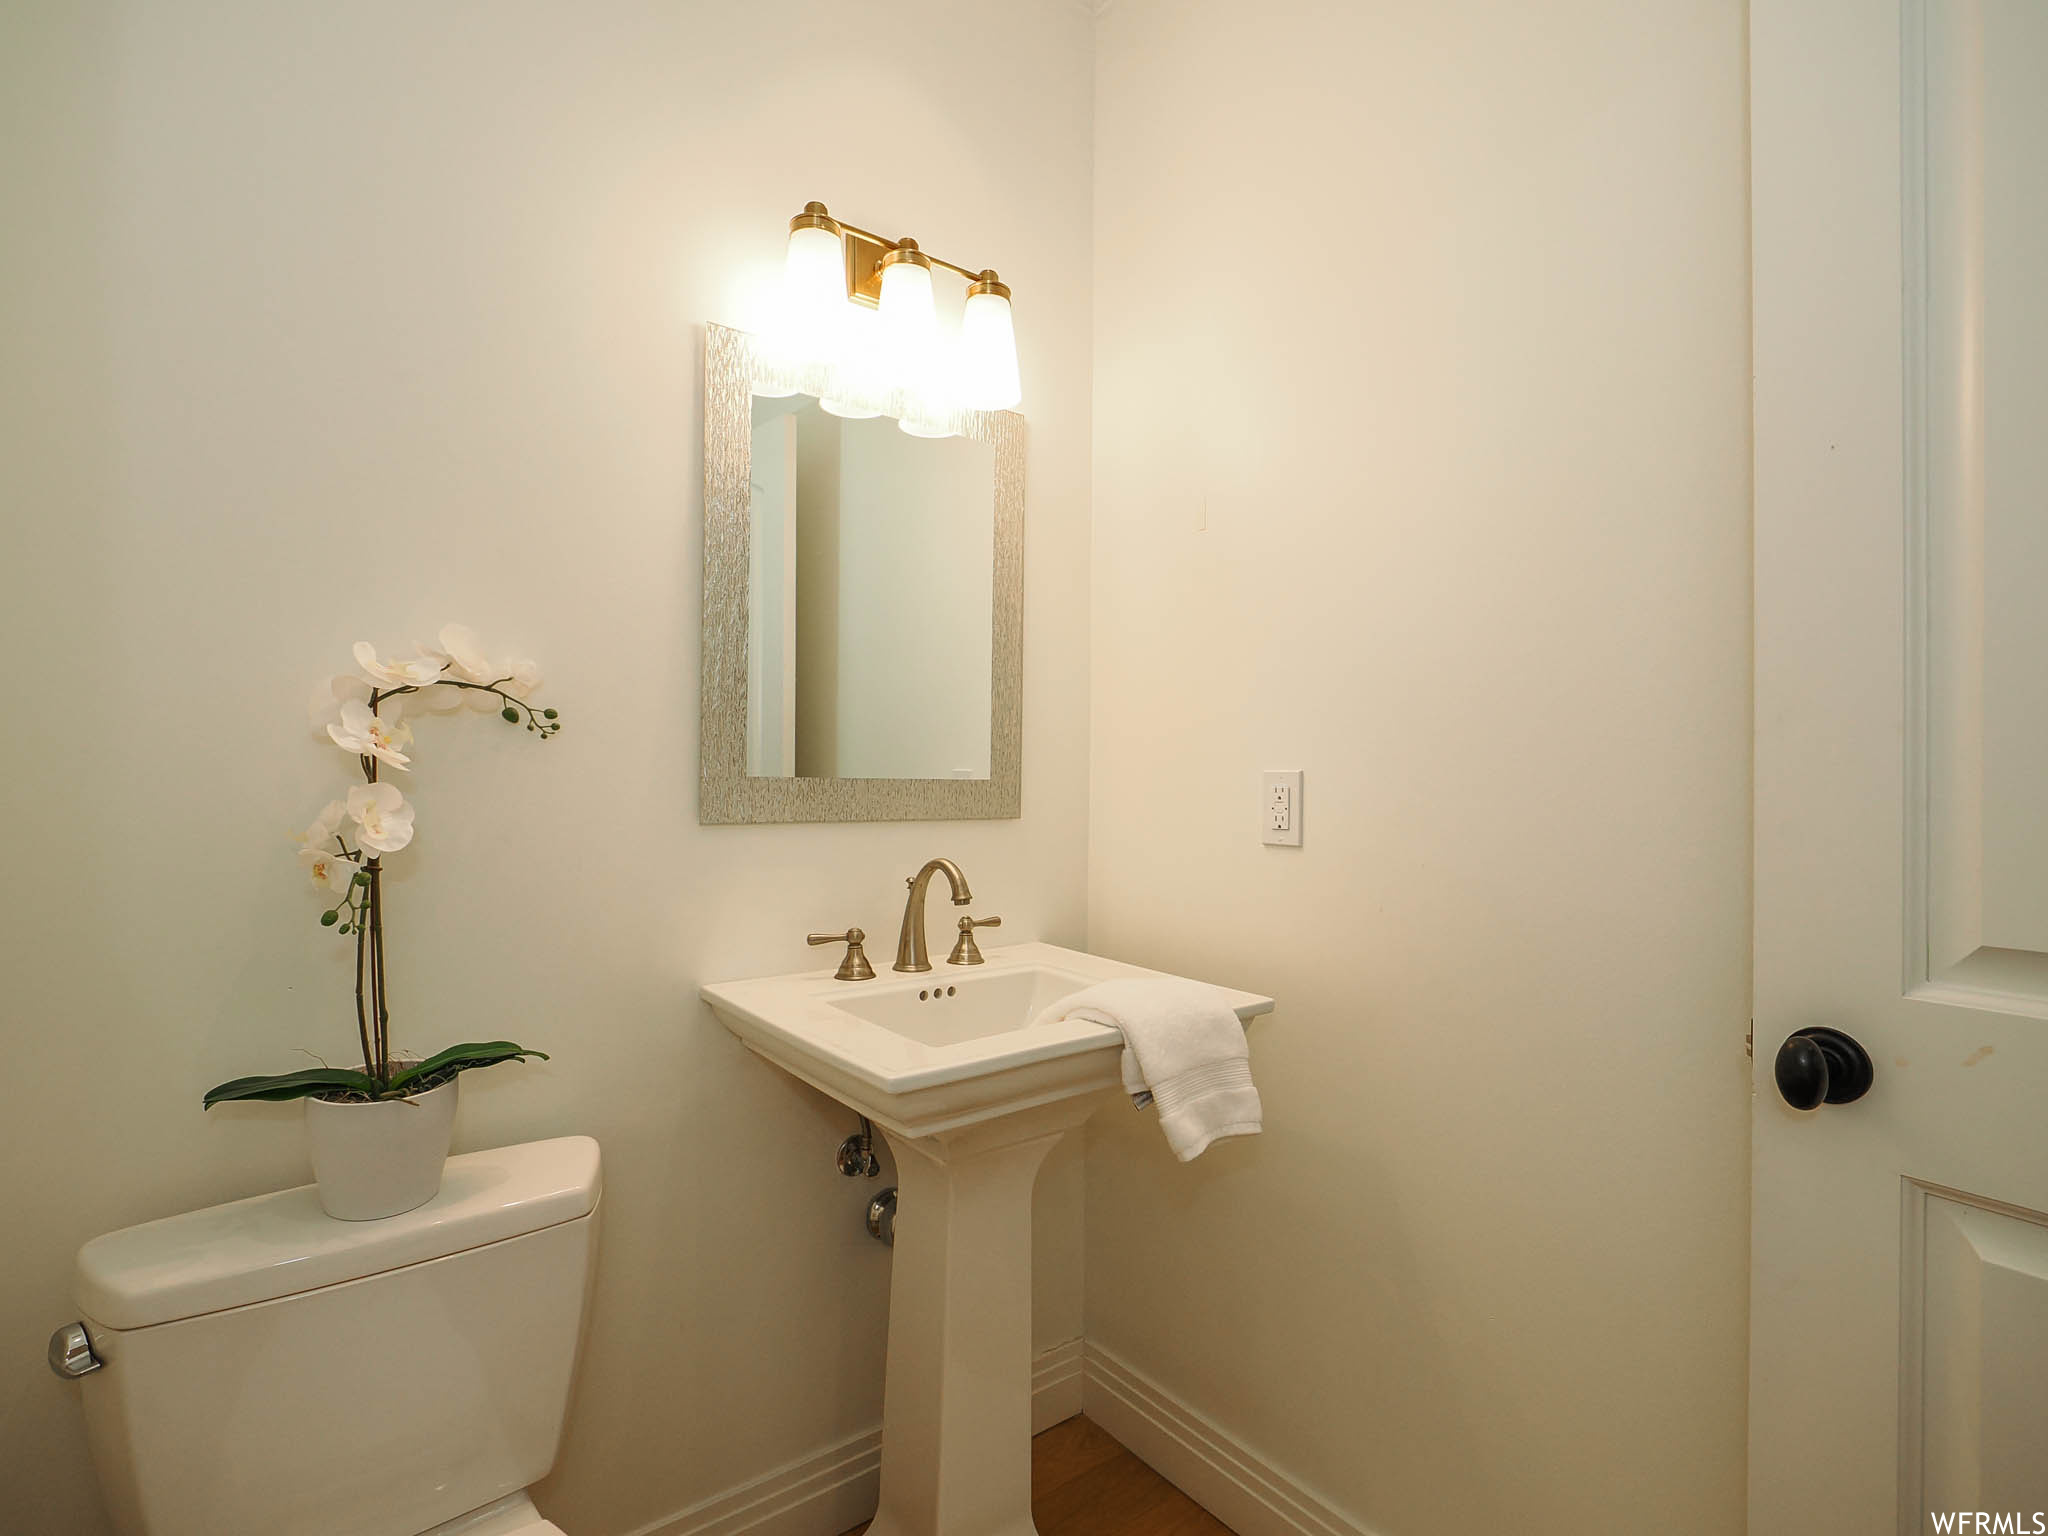 Bathroom featuring washbasin and mirror